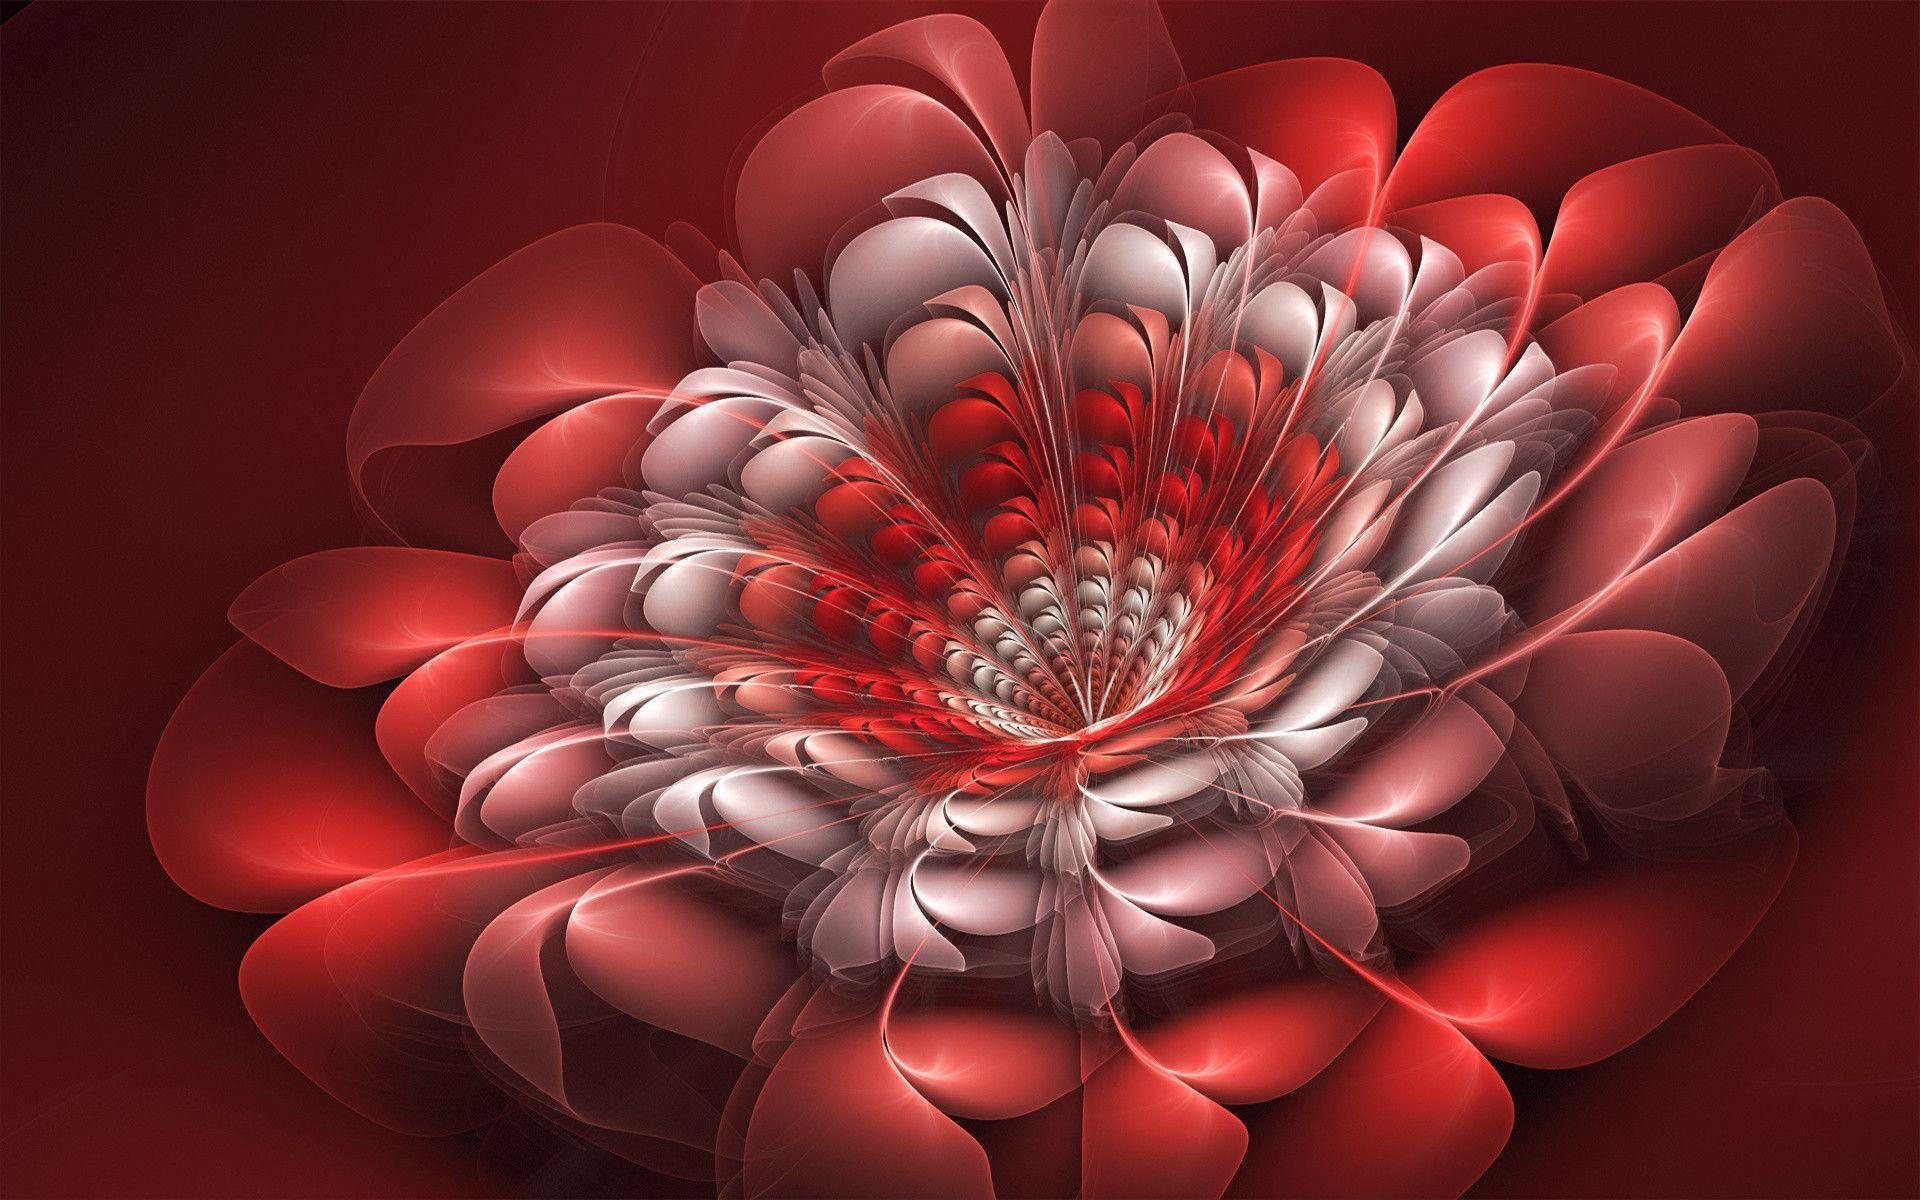 Abstraction fractal 3D art flowers wallpaperx1200